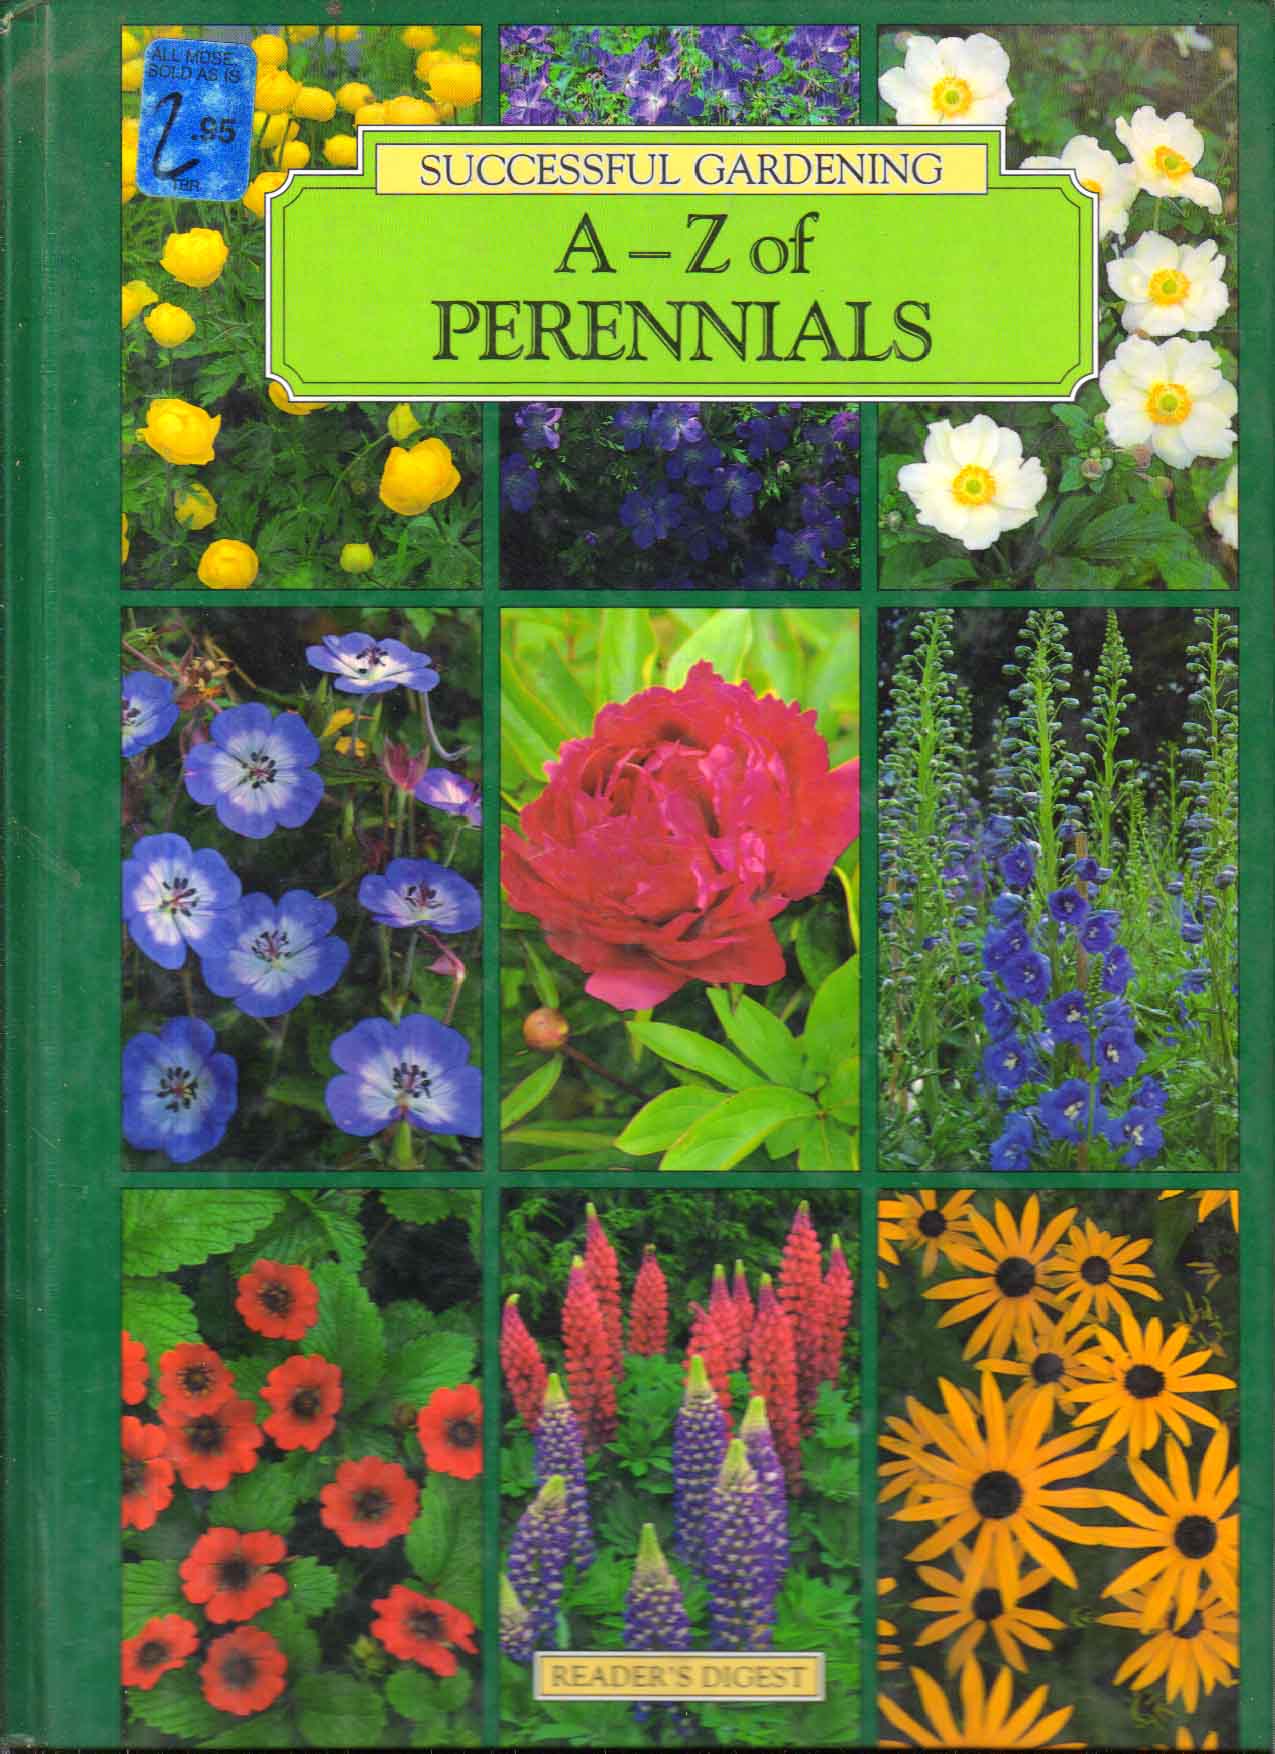 A-Z of Perennials